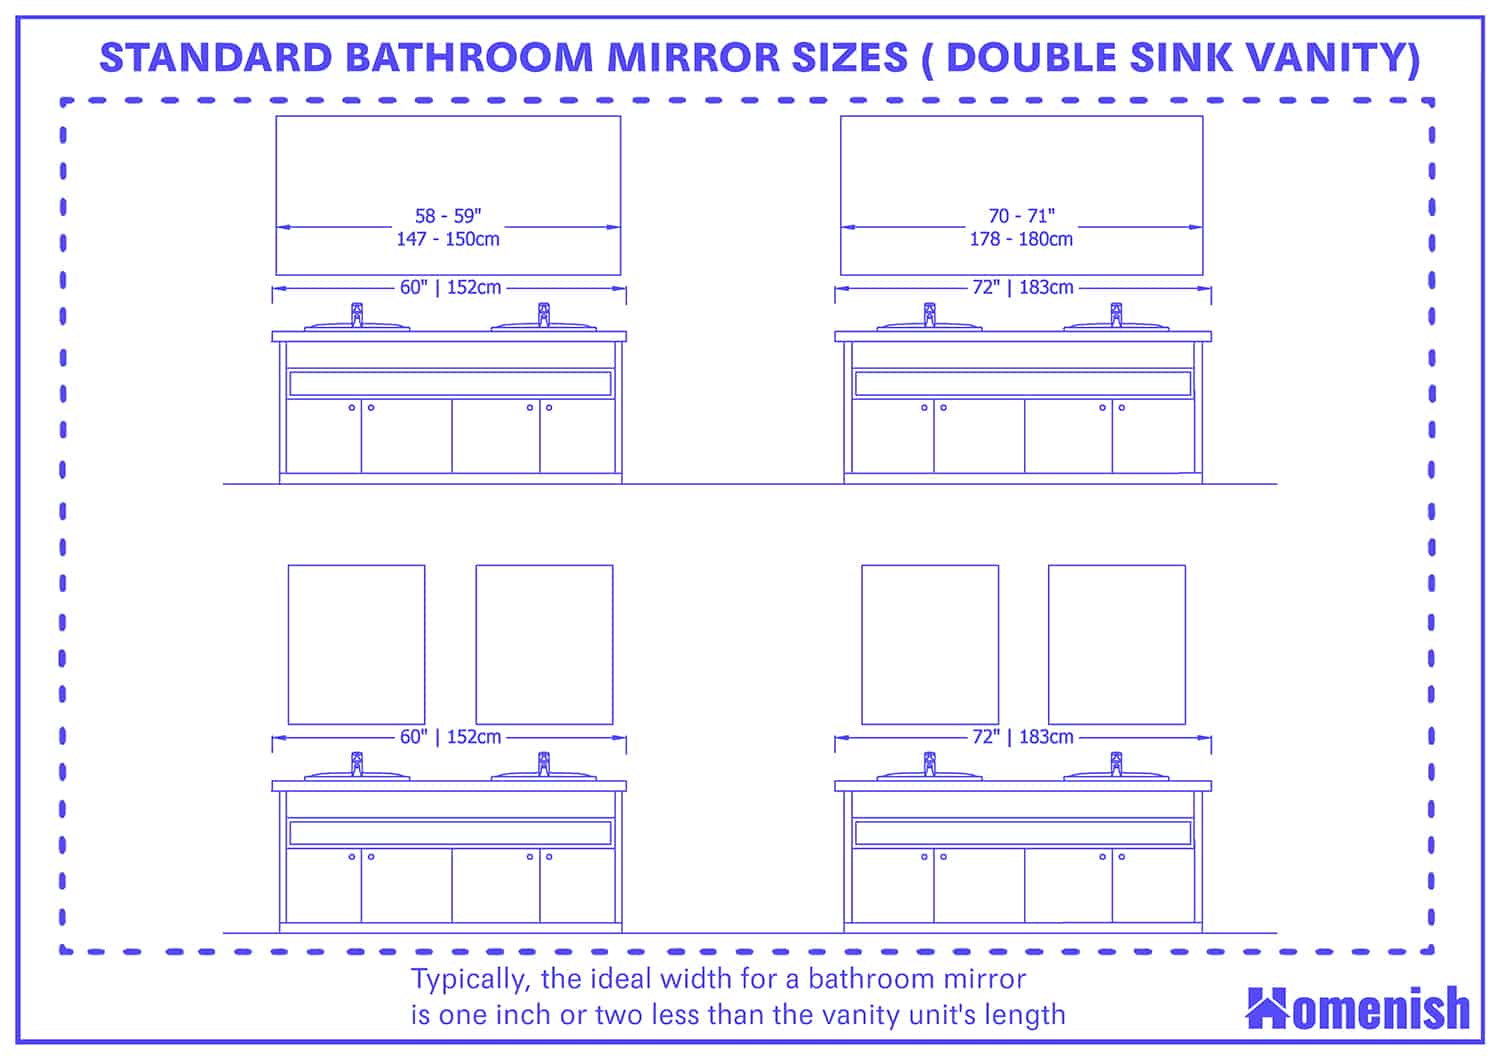 標準浴室鏡尺寸，適用於雙層沉降